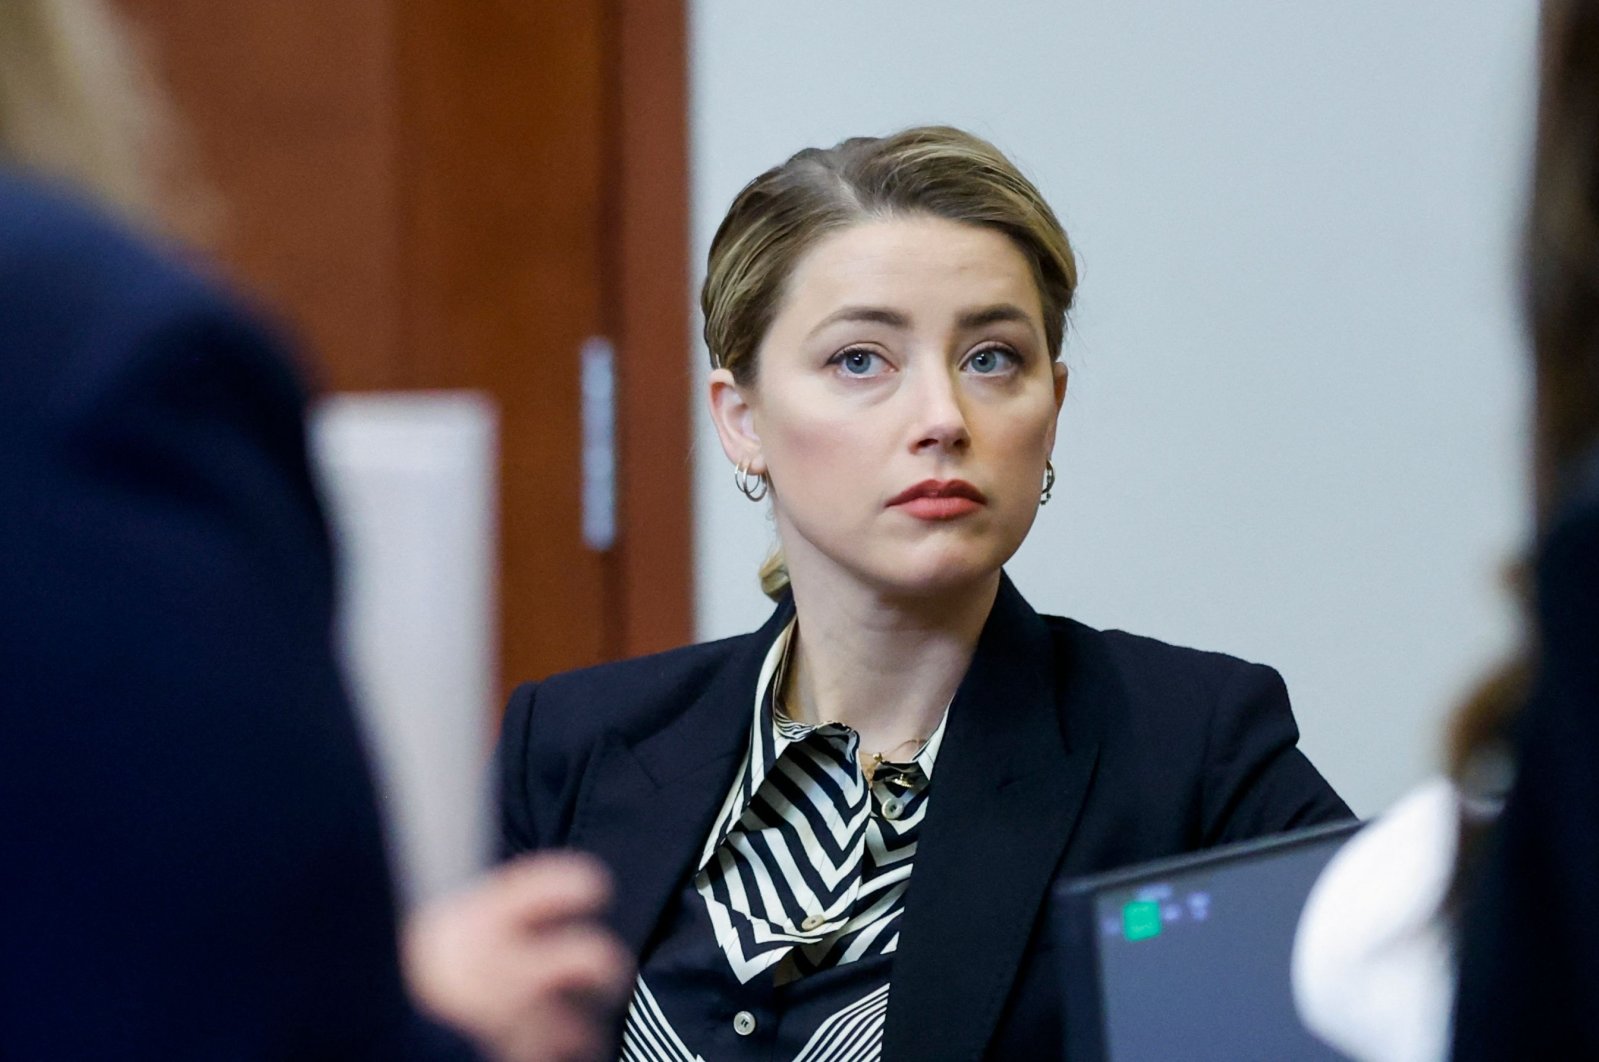 Tidak ada tanda-tanda cedera di wajah Amber Heard, petugas menunjukkan